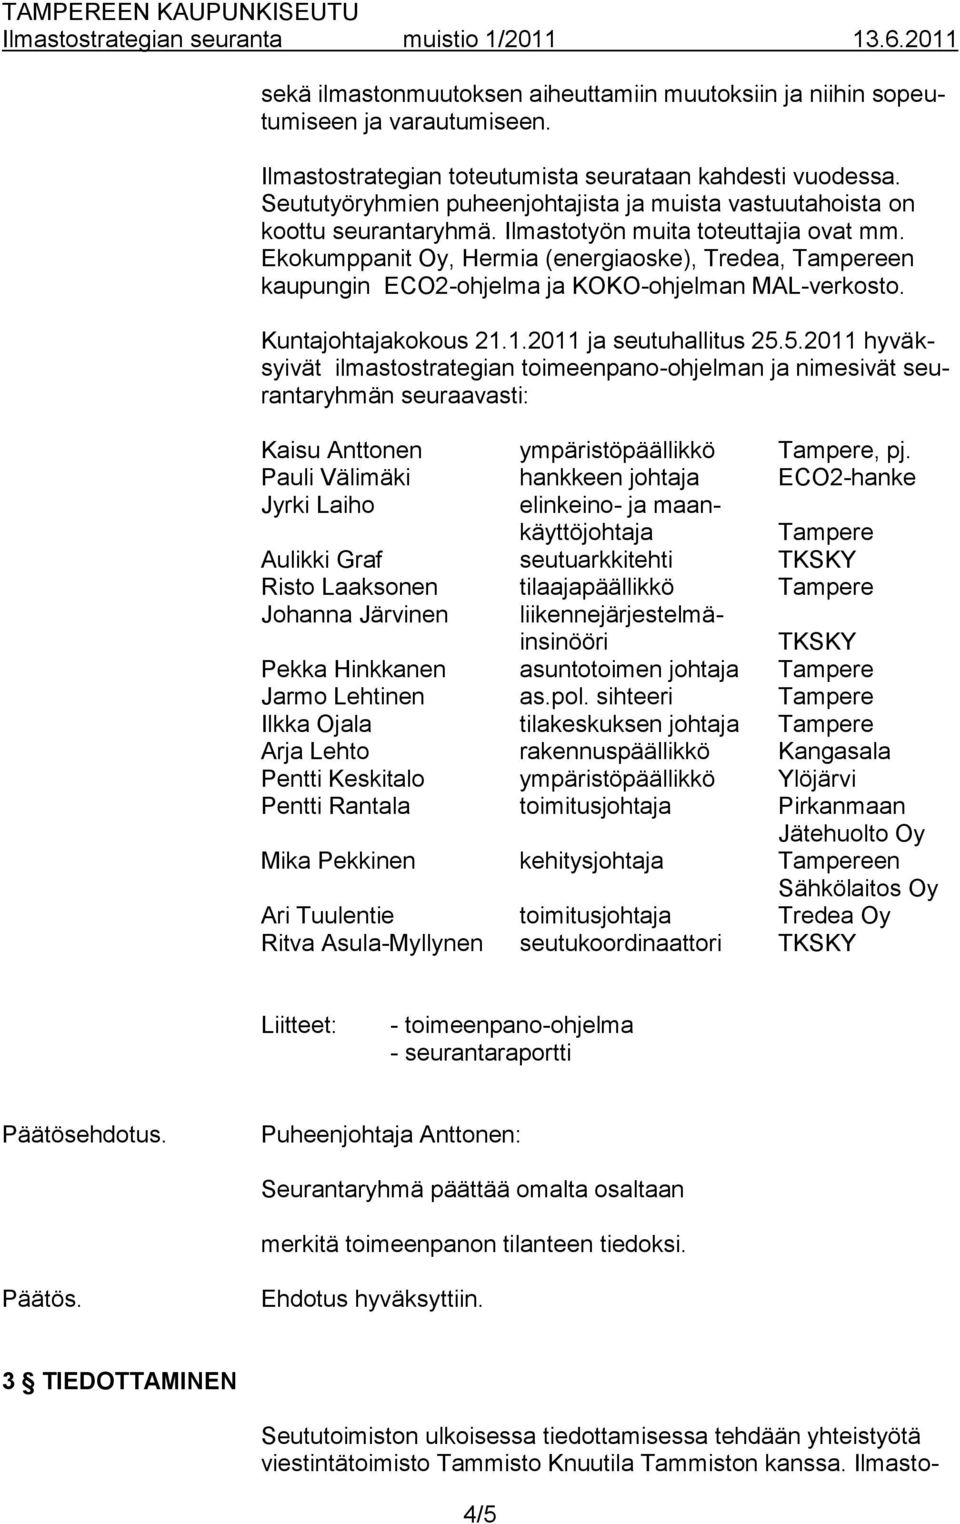 Ekokumppanit Oy, Hermia (energiaoske), Tredea, Tampereen kaupungin ECO2-ohjelma ja KOKO-ohjelman MAL-verkosto. Kuntajohtajakokous 21.1.2011 ja seutuhallitus 25.